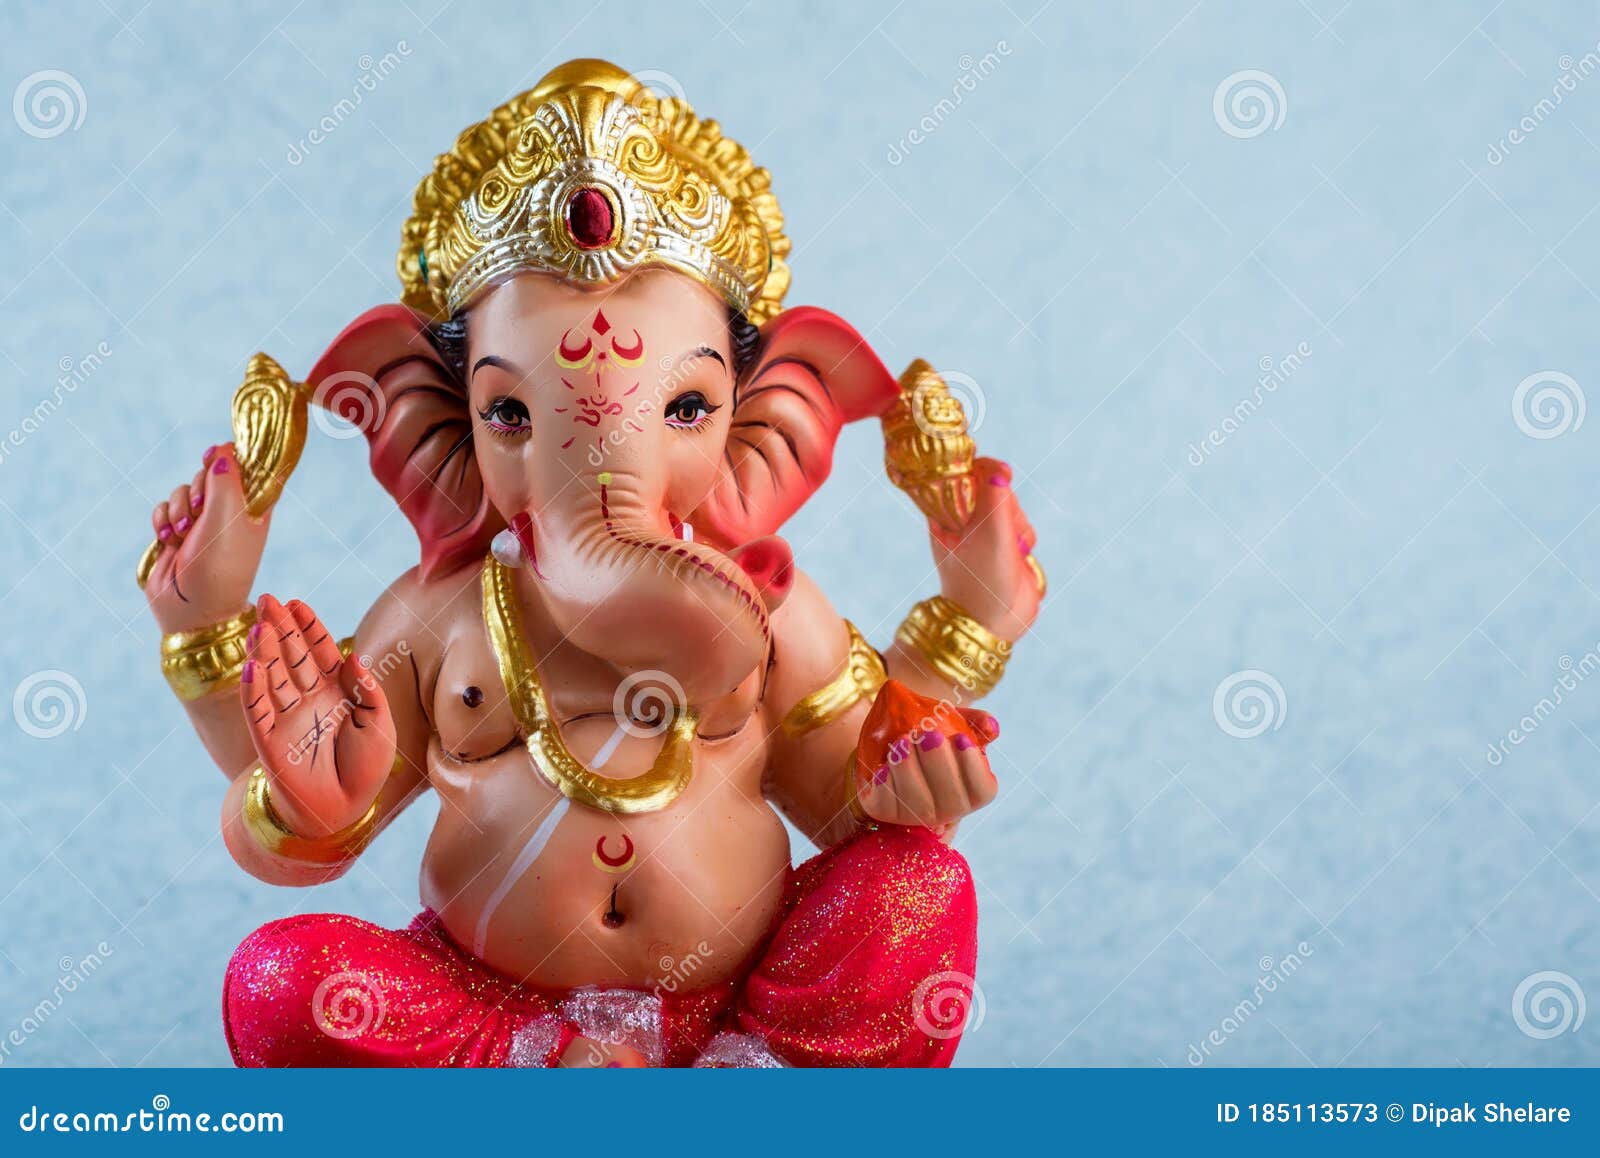 Hindu God Ganesha. Ganesha Idol on Blue Background Stock Image ...